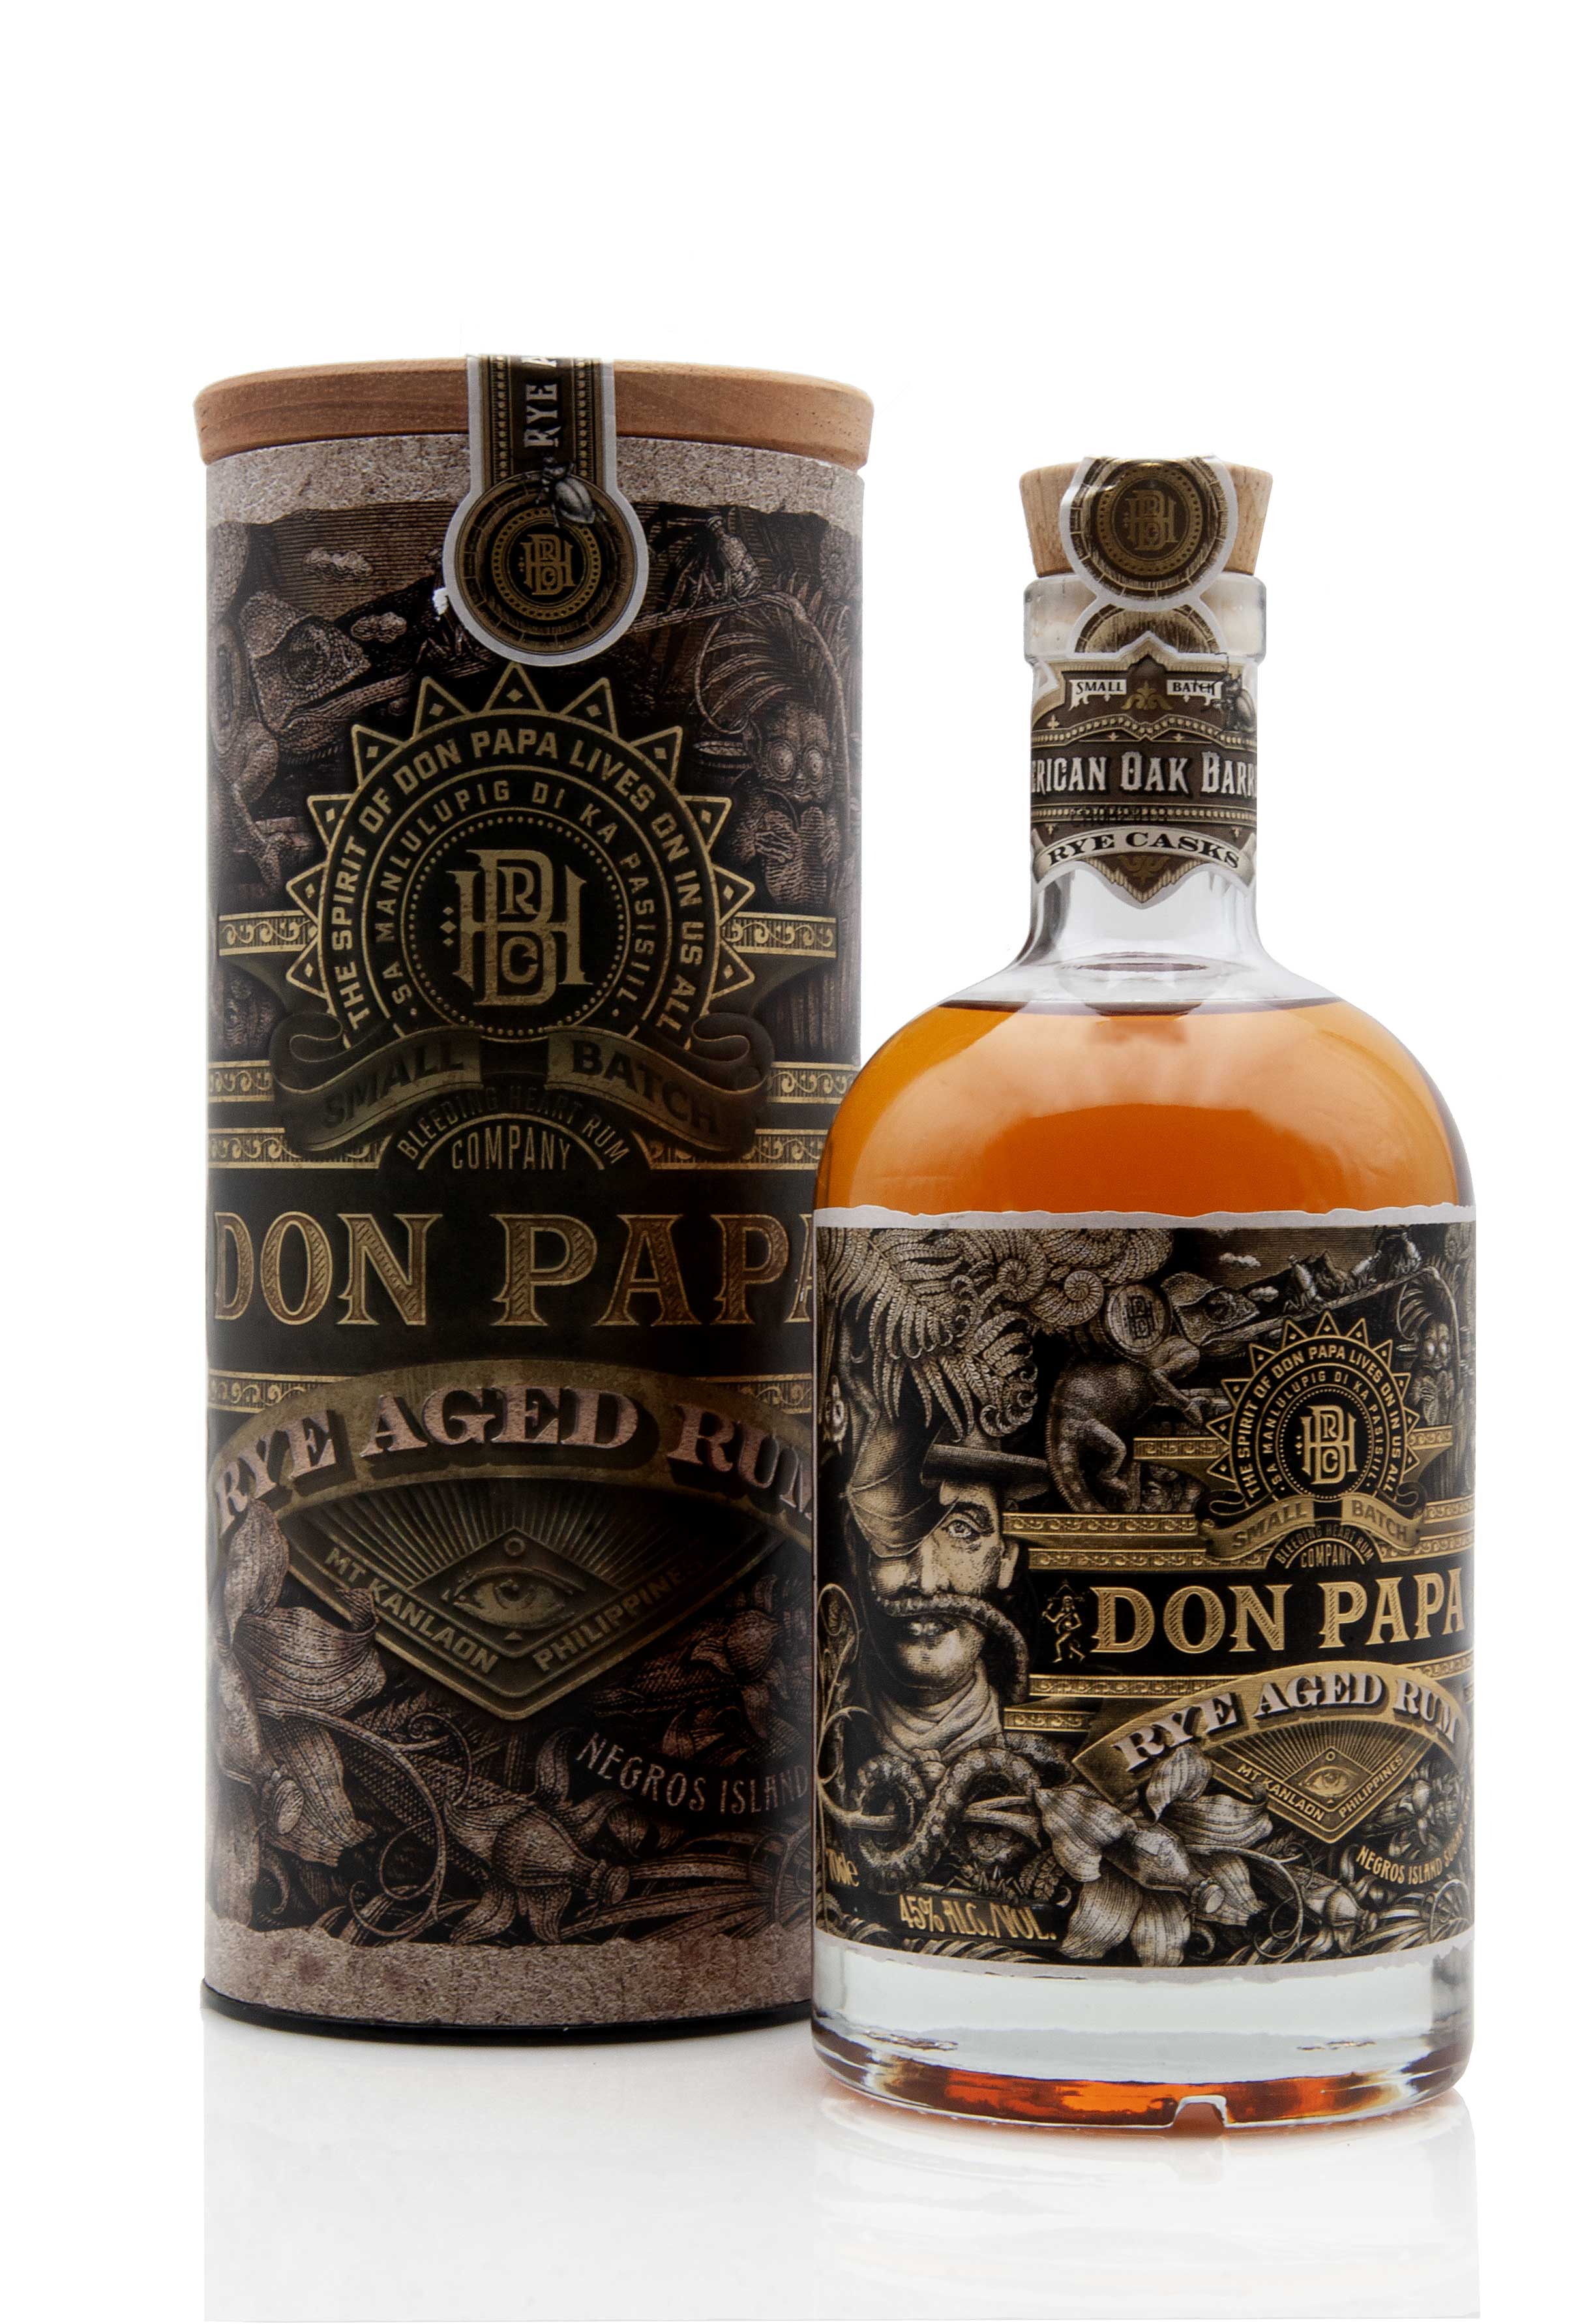 Don Papa Rye Aged Rum, Filipino Rum